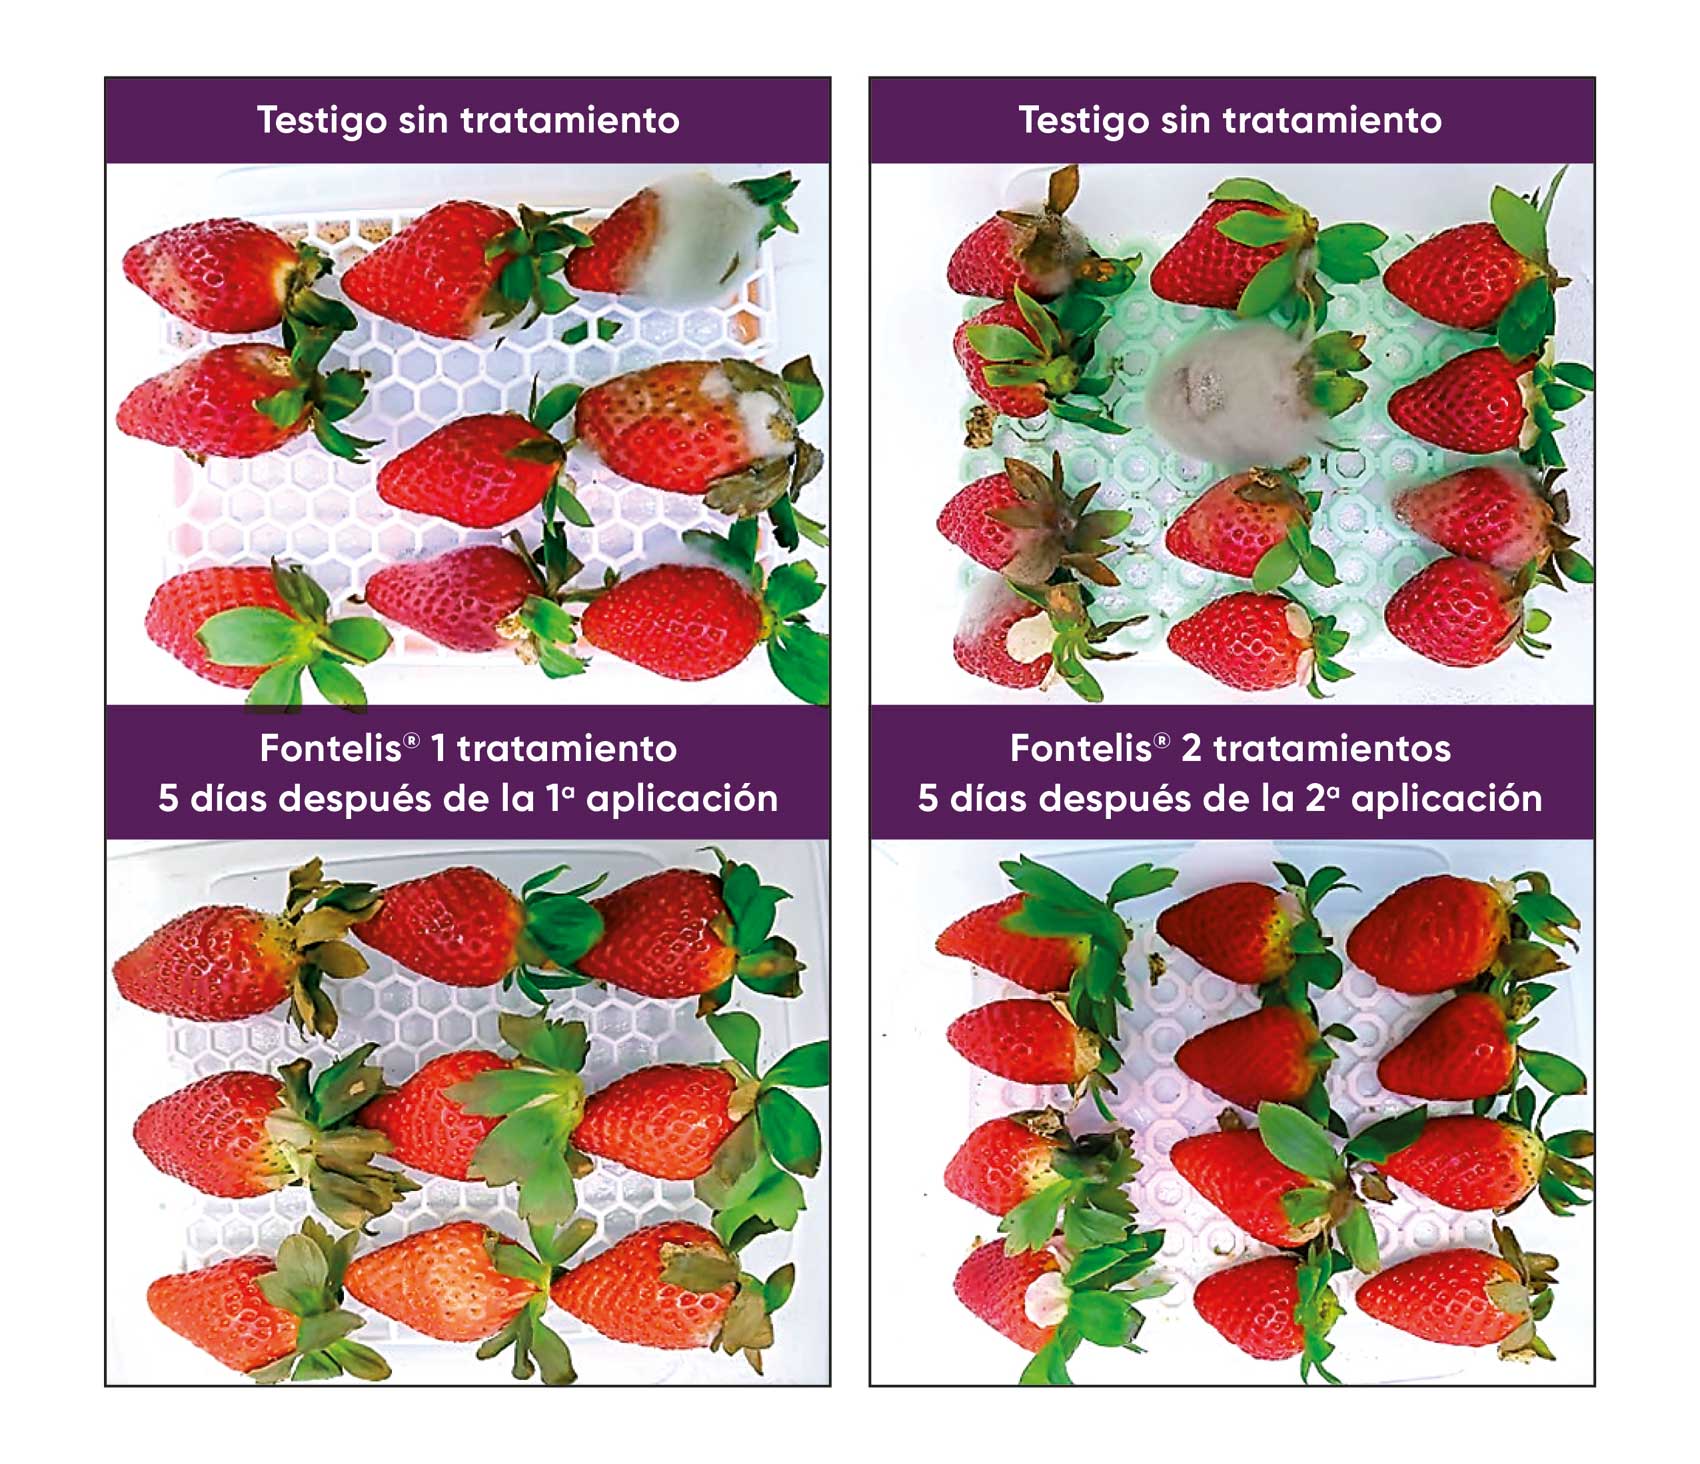 Comparativa de cultivo de fresa sin tratamiento (imagen superior) y con tratamiento con Fontelis (imagen inferior)...